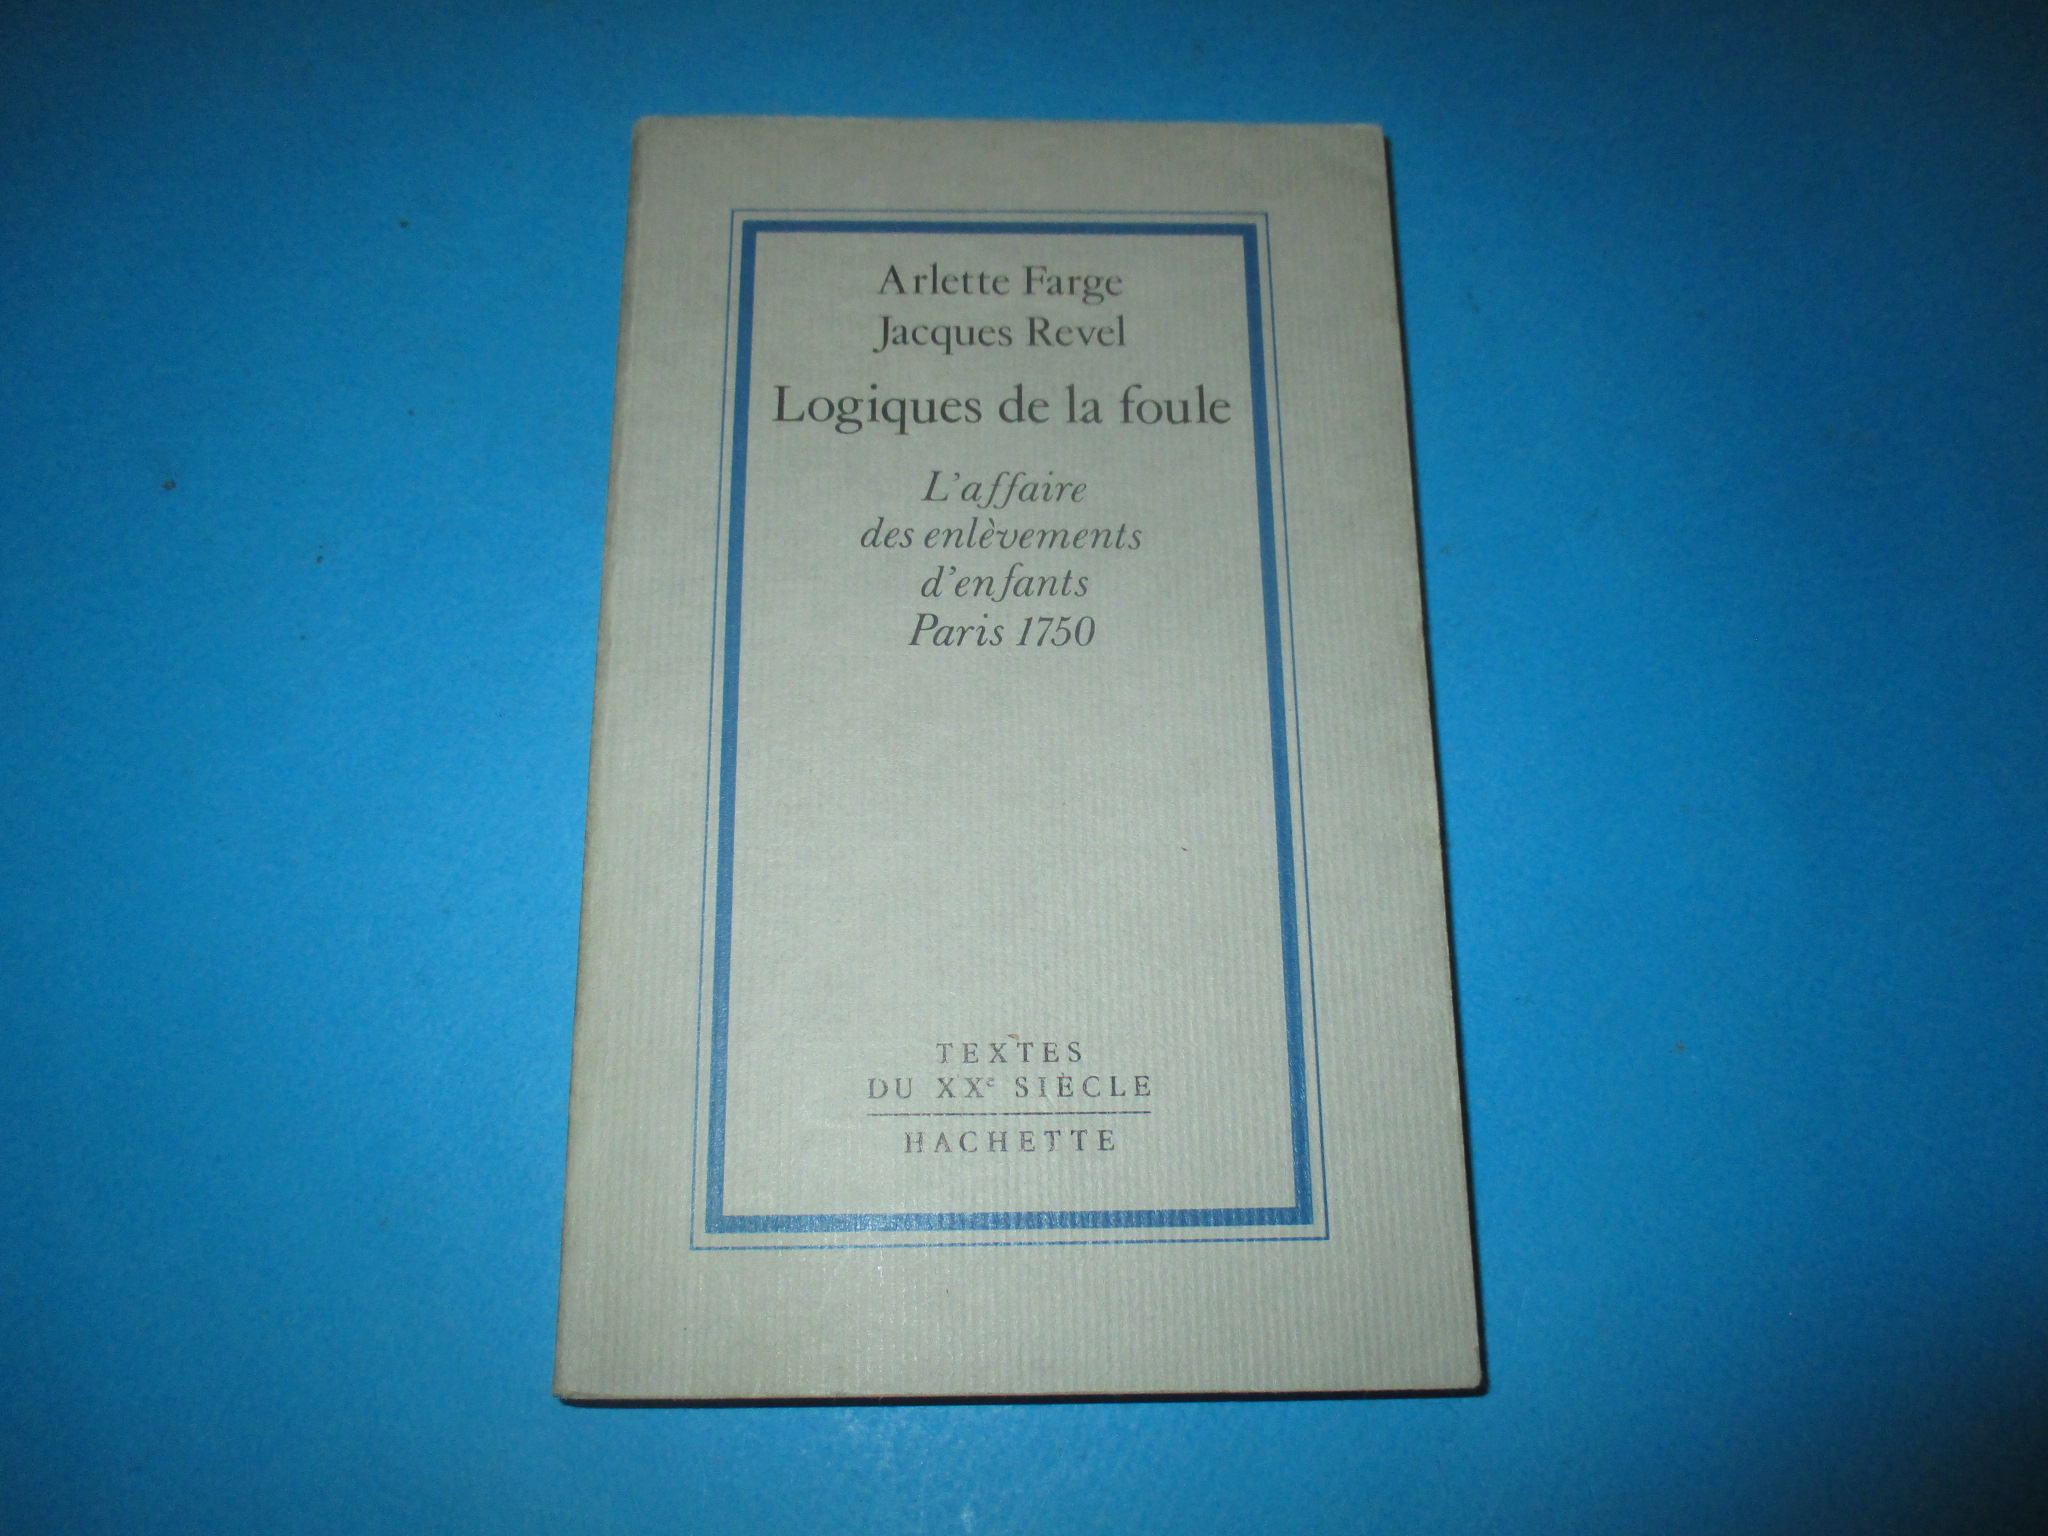 Logiques de la Foule, L\'Affaire des enlèvements d\'enfants Paris 1750, Arlette Farge & Jacques Revel, Textes du XXe siècle Hachette 1988